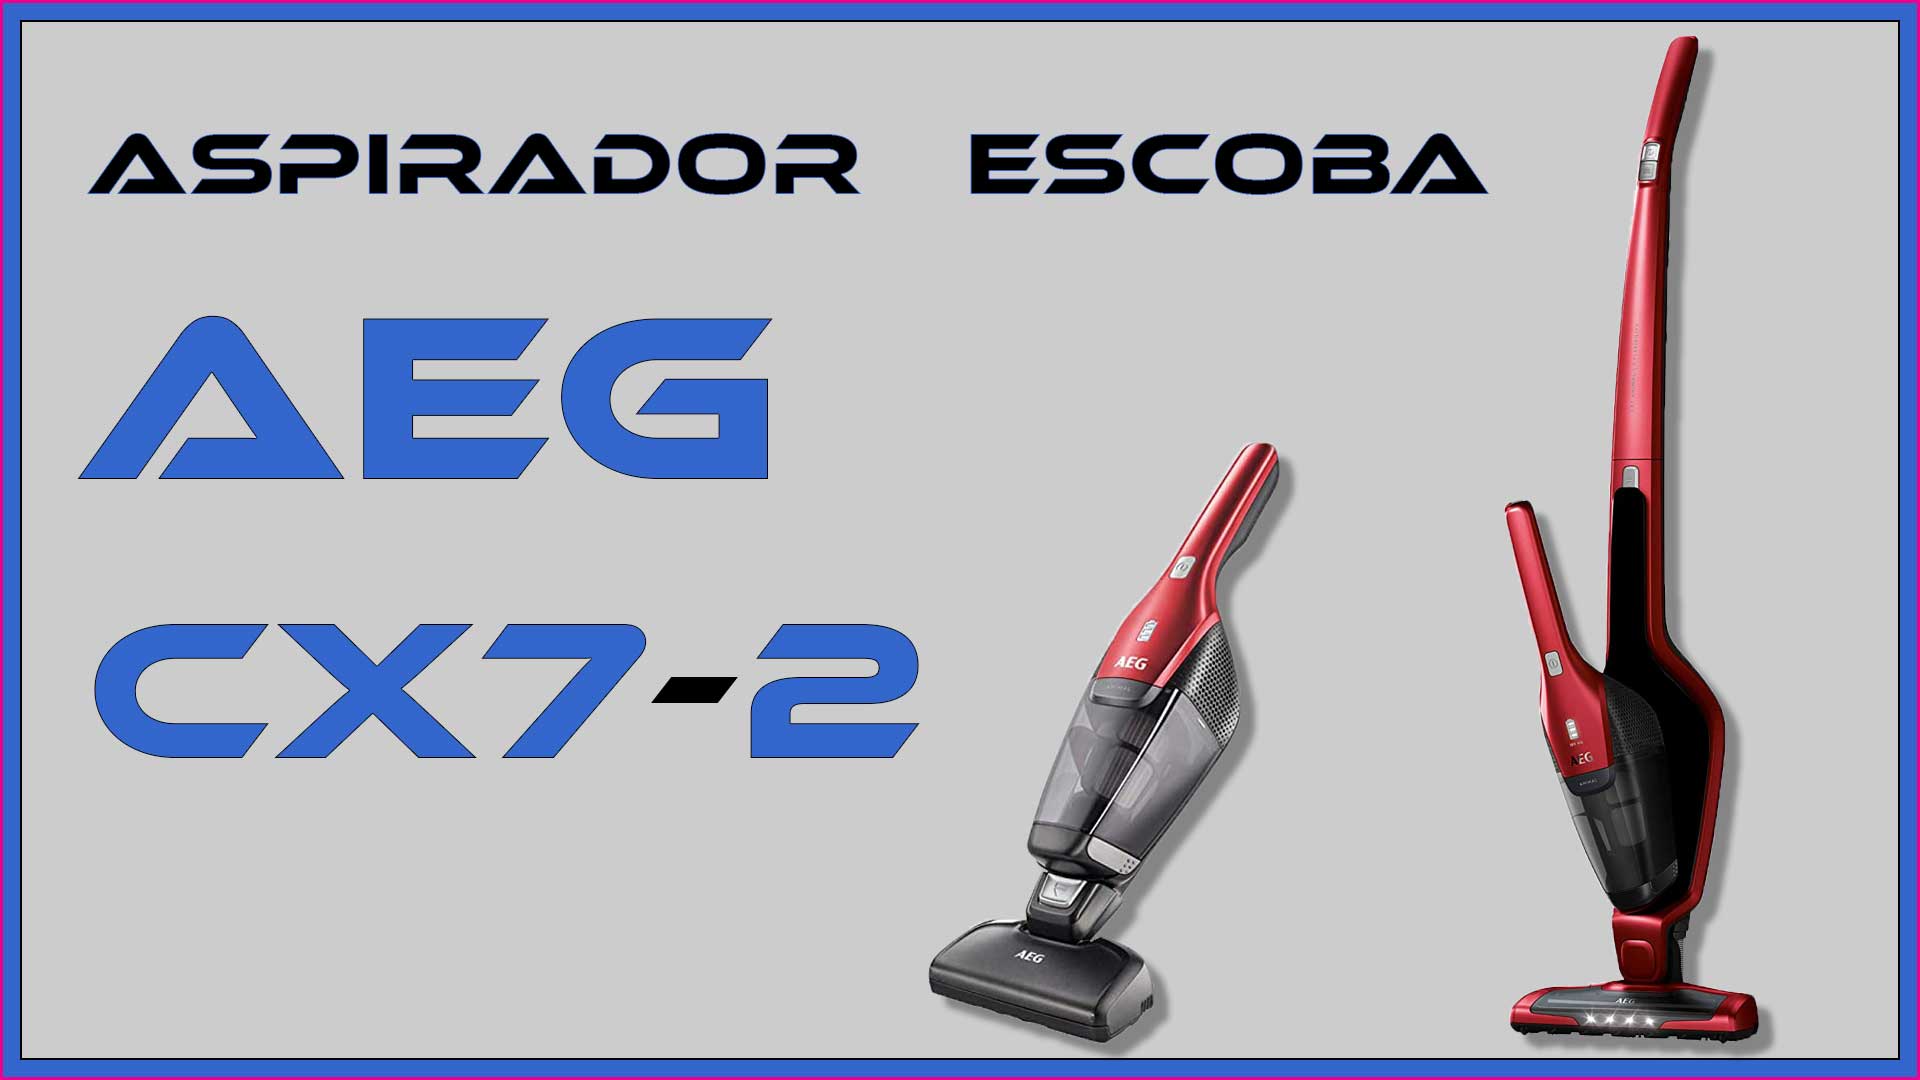 Imagen principal del artículo sobre la aspiradora escoba AEG CX7-2